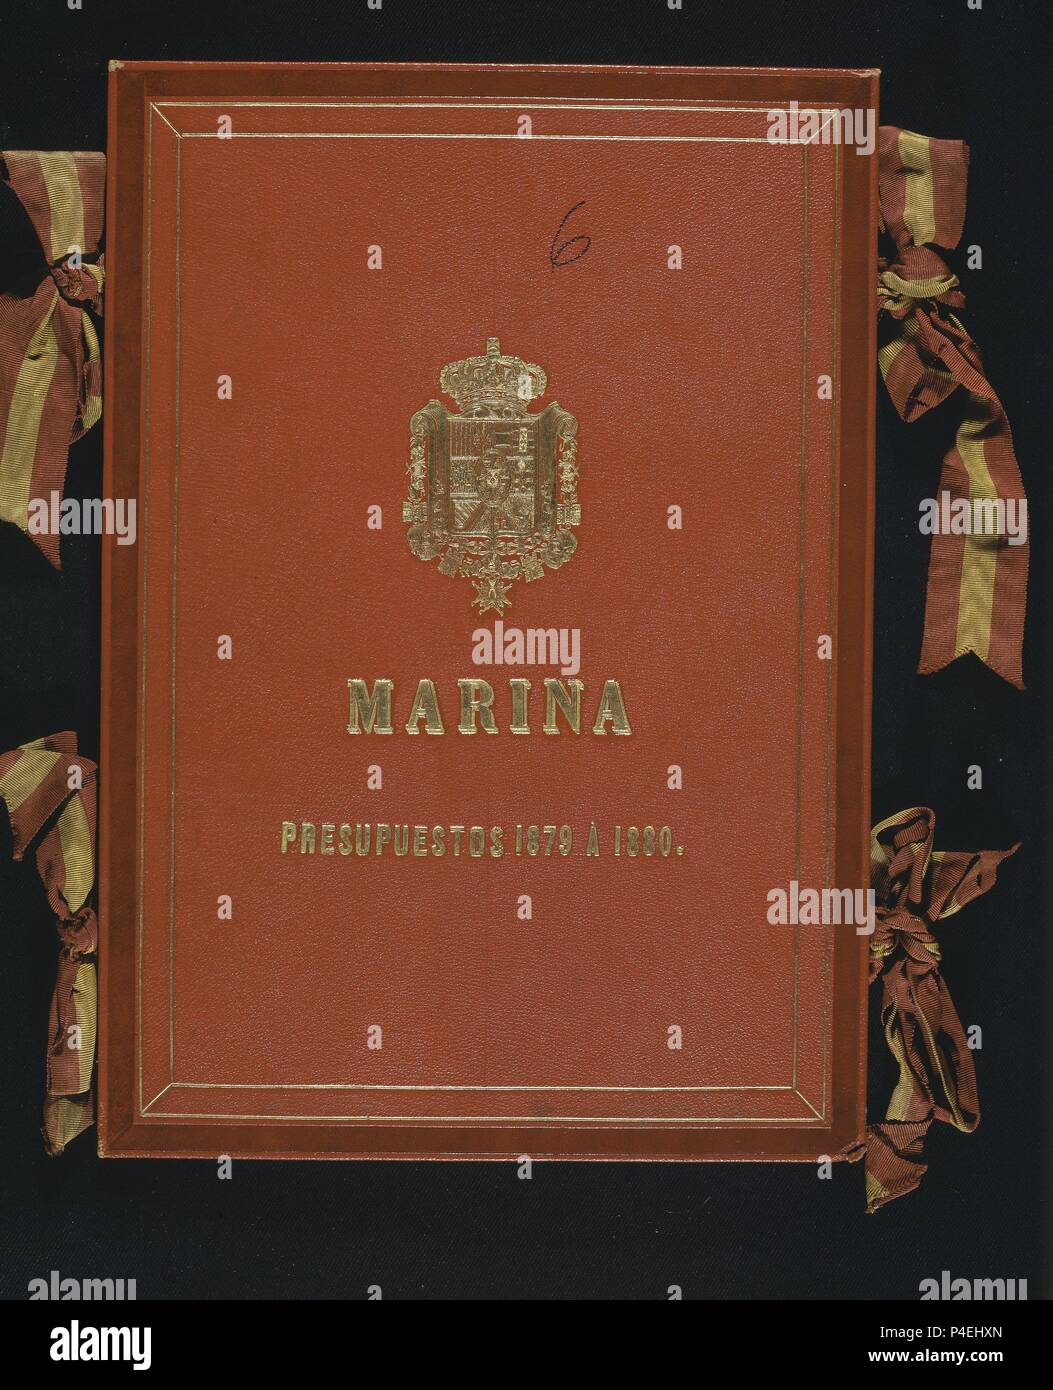 MARINA - PRESUPUESTOS DE 1879 A 1880 - CARPETA. Location: CONGRESO DE LOS DIPUTADOS-BIBLIOTECA, MADRID, SPAIN. Stock Photo